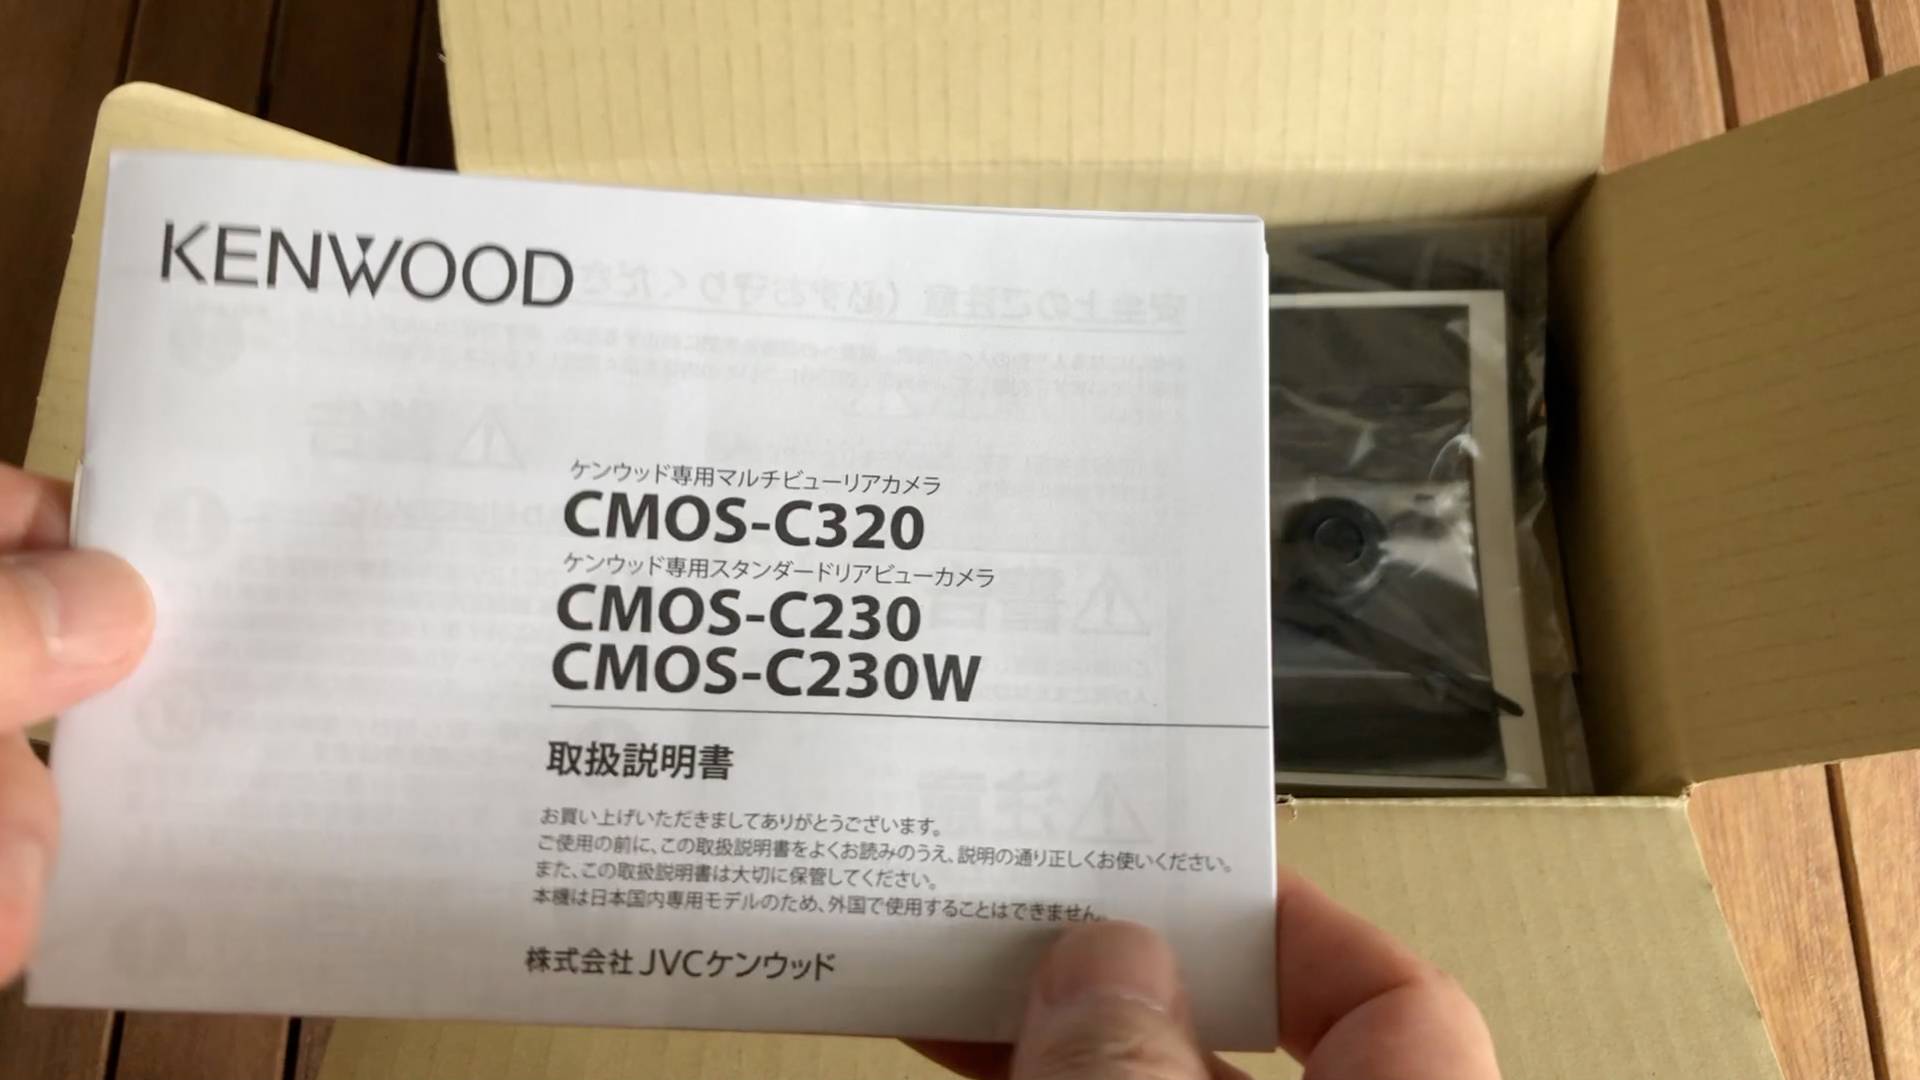 【軽バンカスタマイズ4】KENWOOD CMOS-C230リアビューカメラの取付け